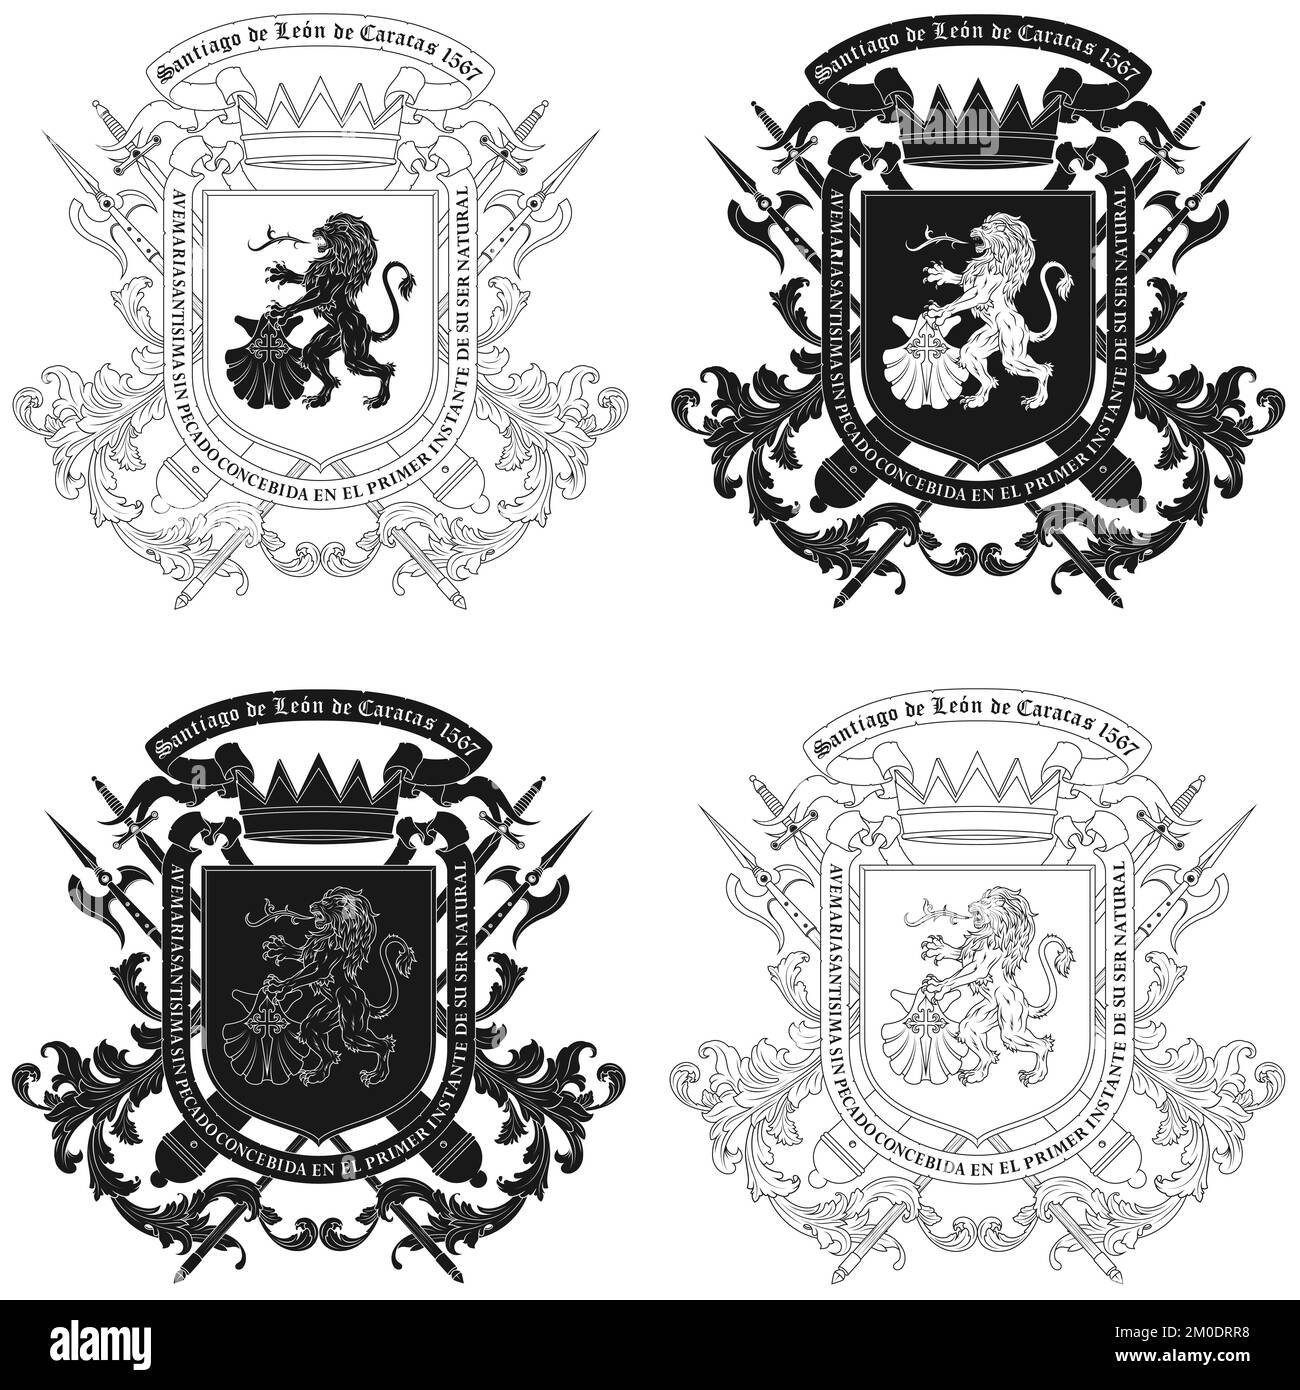 Armoiries de la ville de Caracas Venezuela, armoiries de Santiago de León de Caracas ont été accordées par le roi Philippe II d'Espagne Illustration de Vecteur